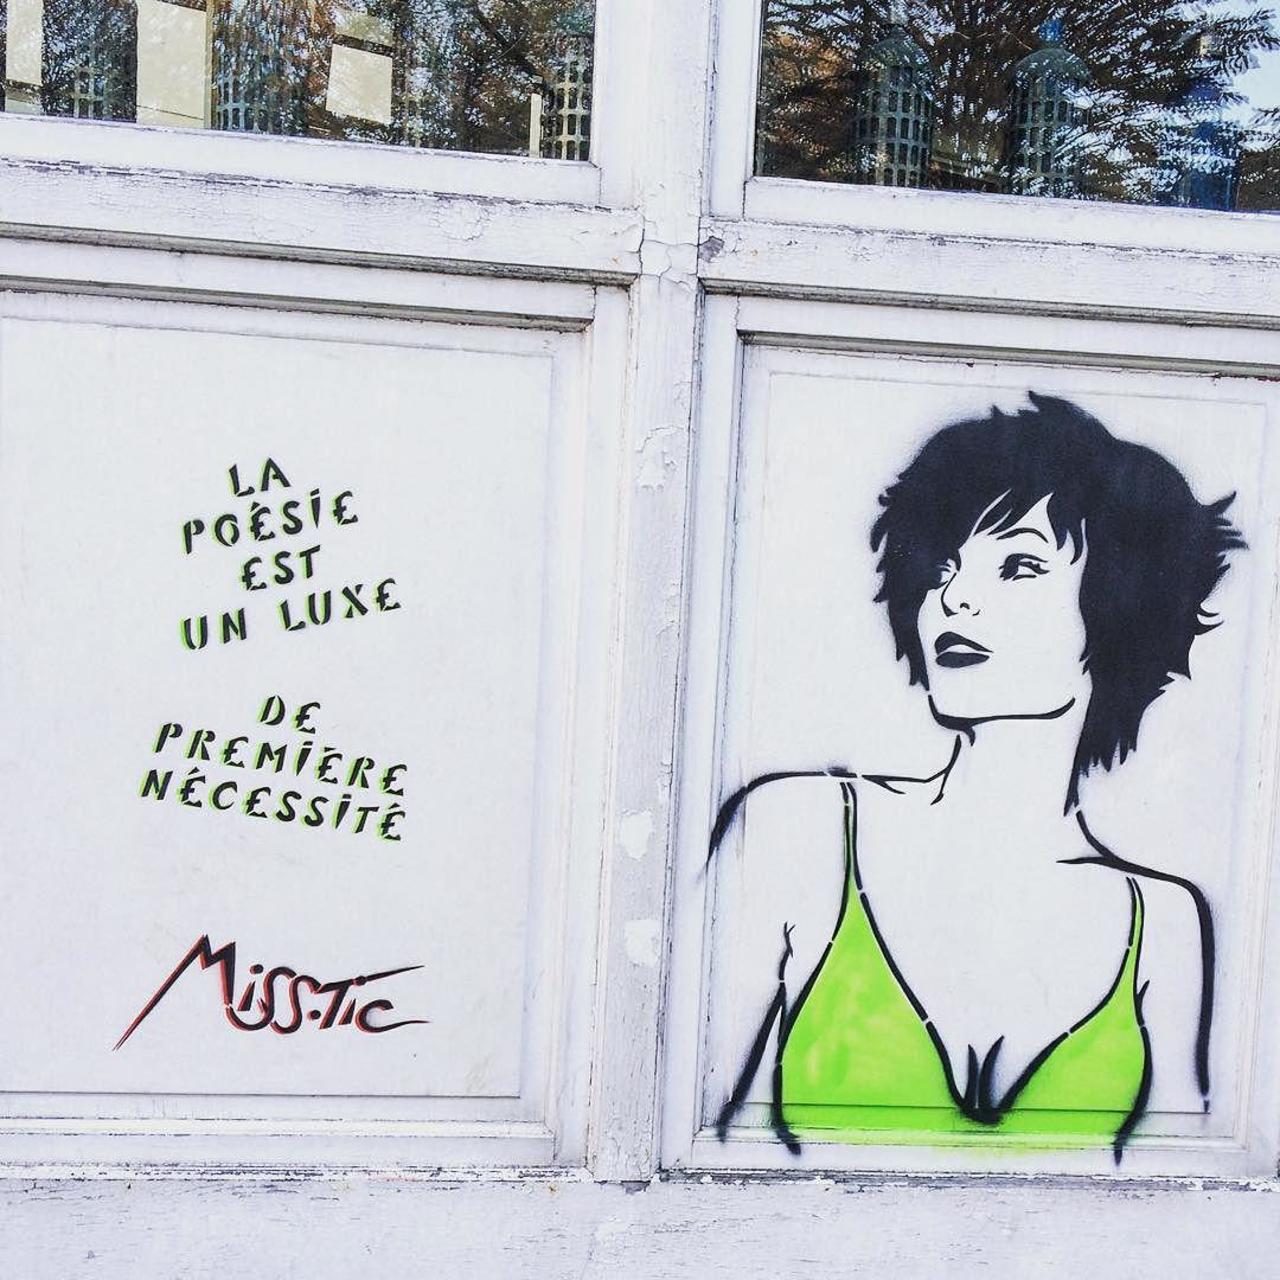 #Paris #graffiti photo by @julosteart http://ift.tt/1JYCPJw #StreetArt http://t.co/0hnRAnZARb